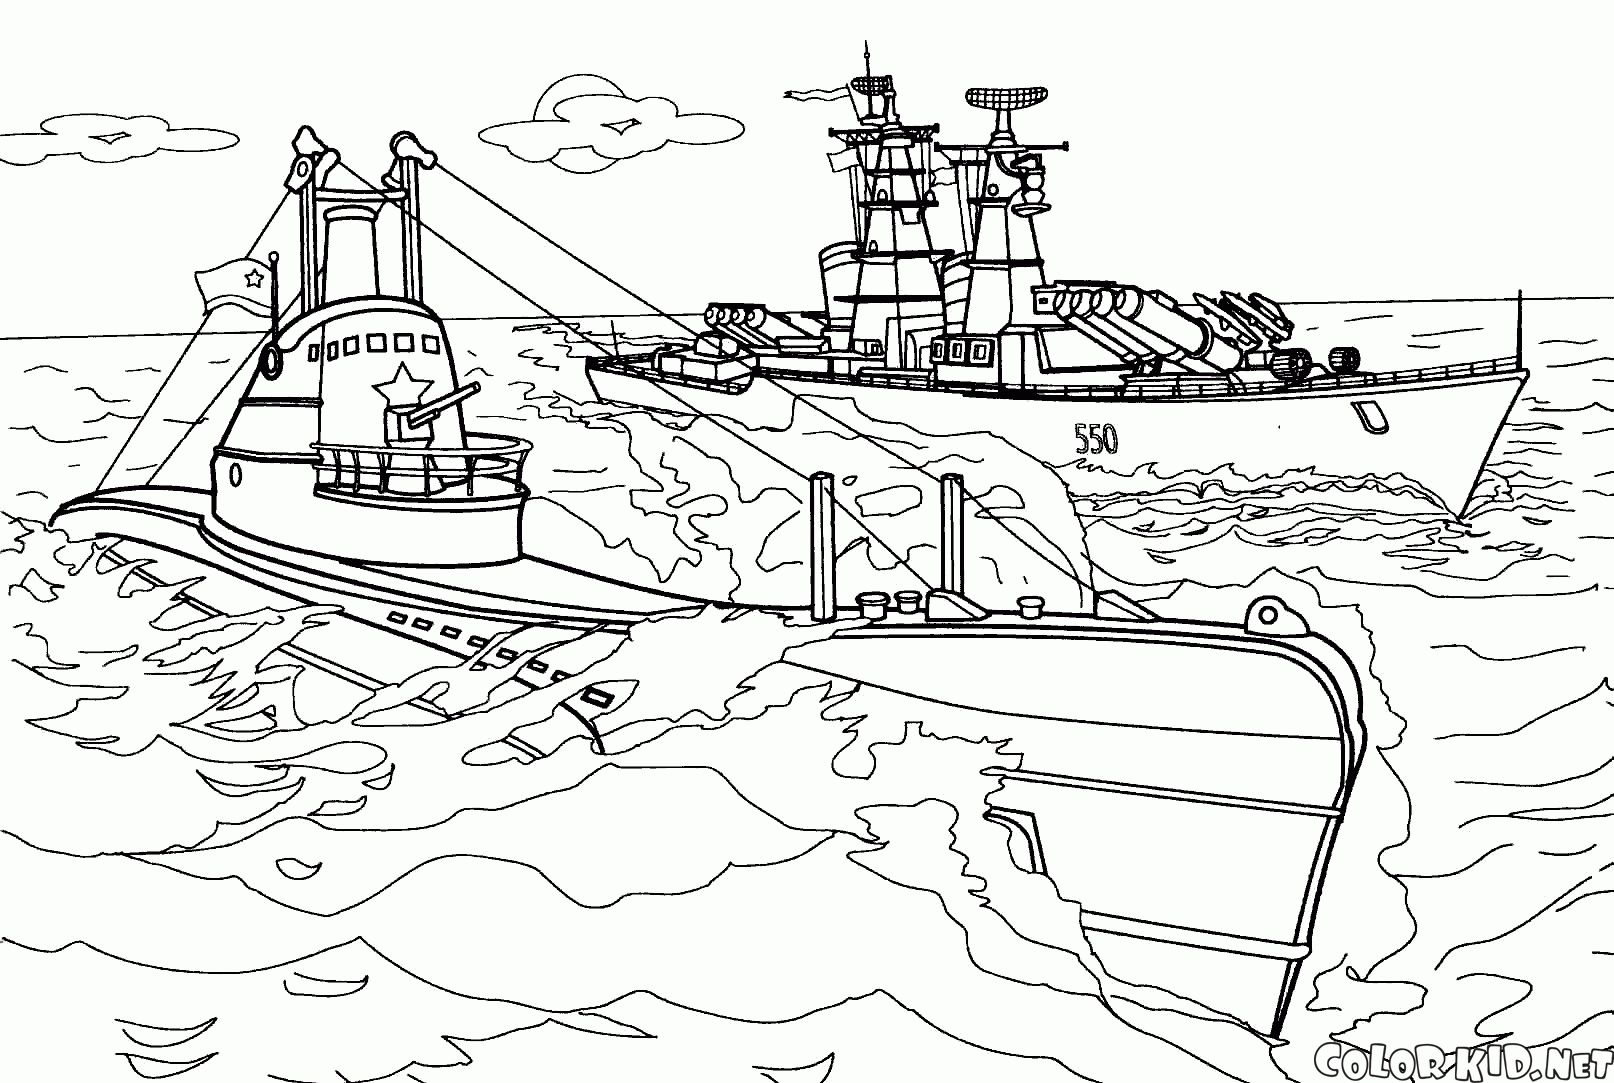 SC-402潜水艦